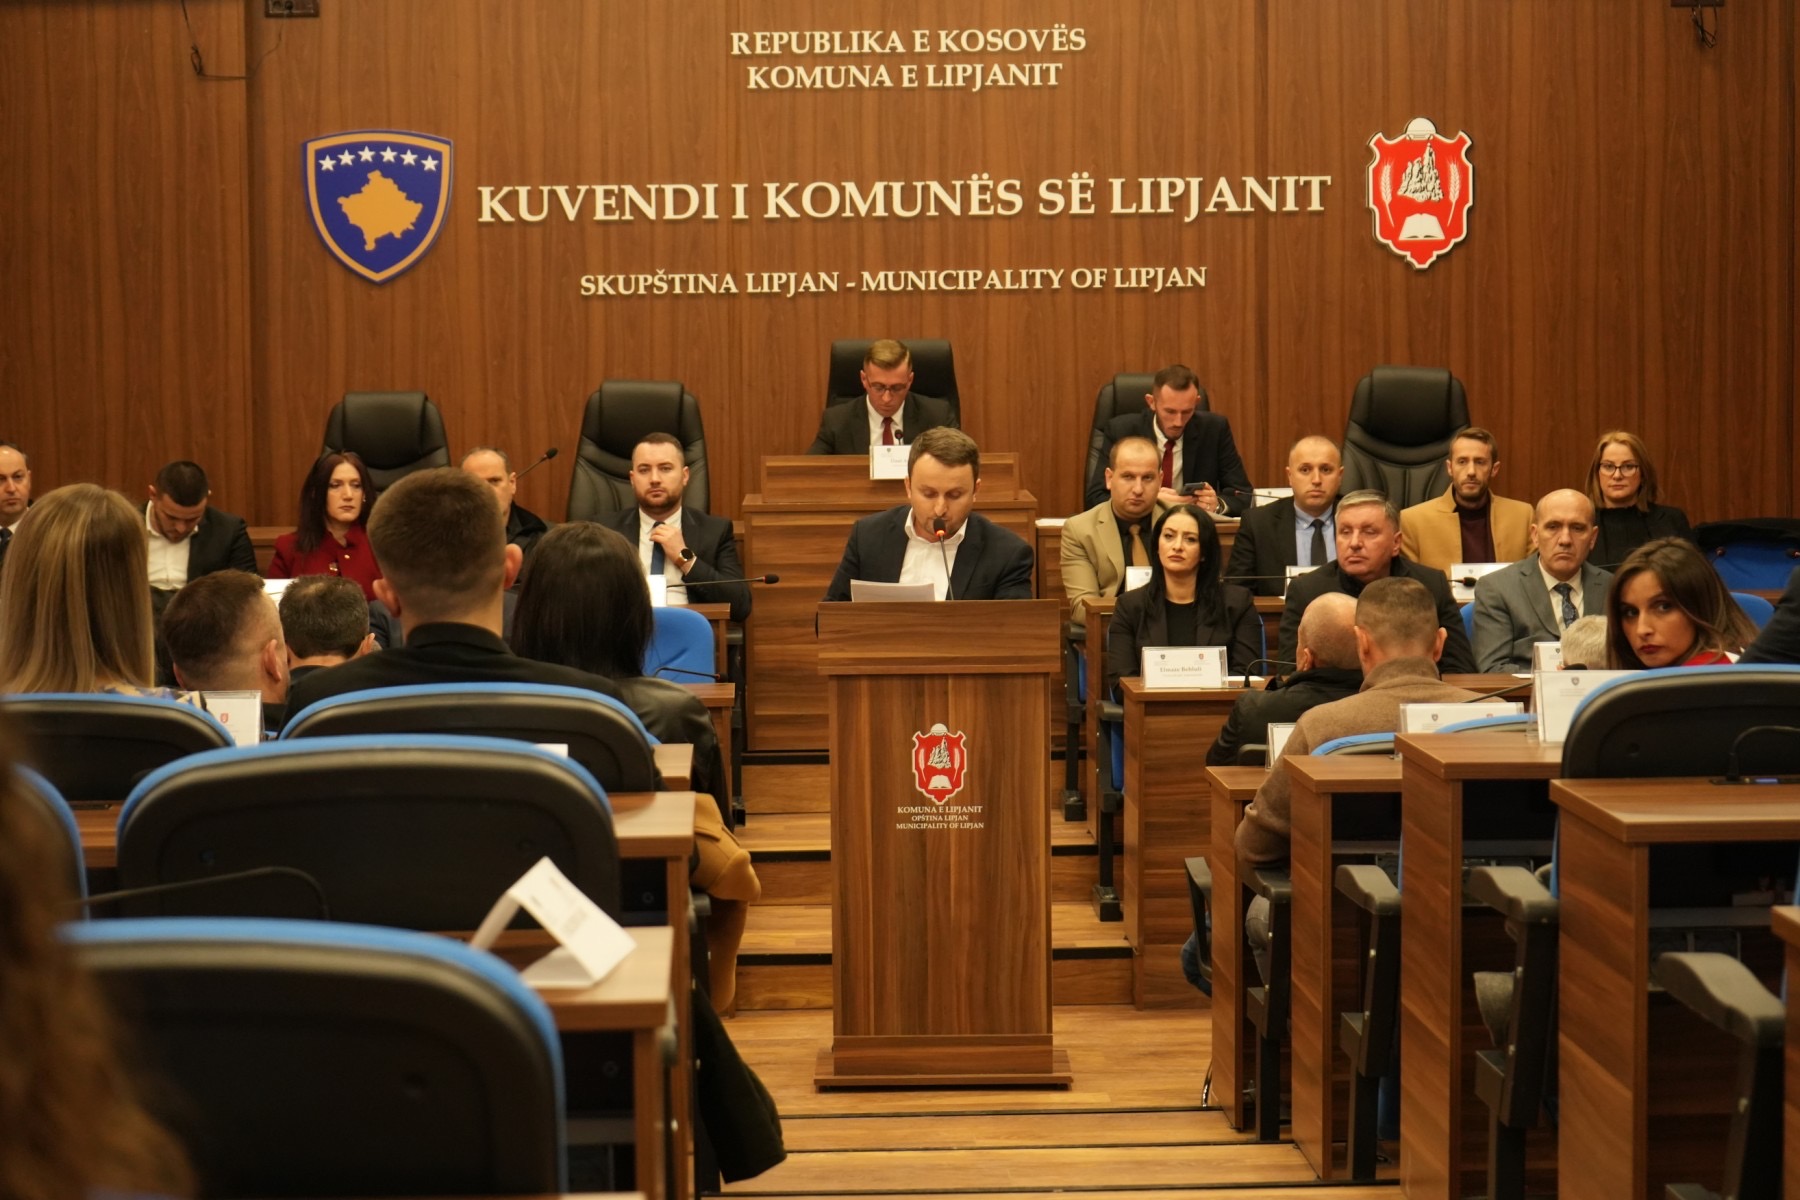 Kuvendi Komunal i Lipjanit me 12 këshilltarë “pa gojë”